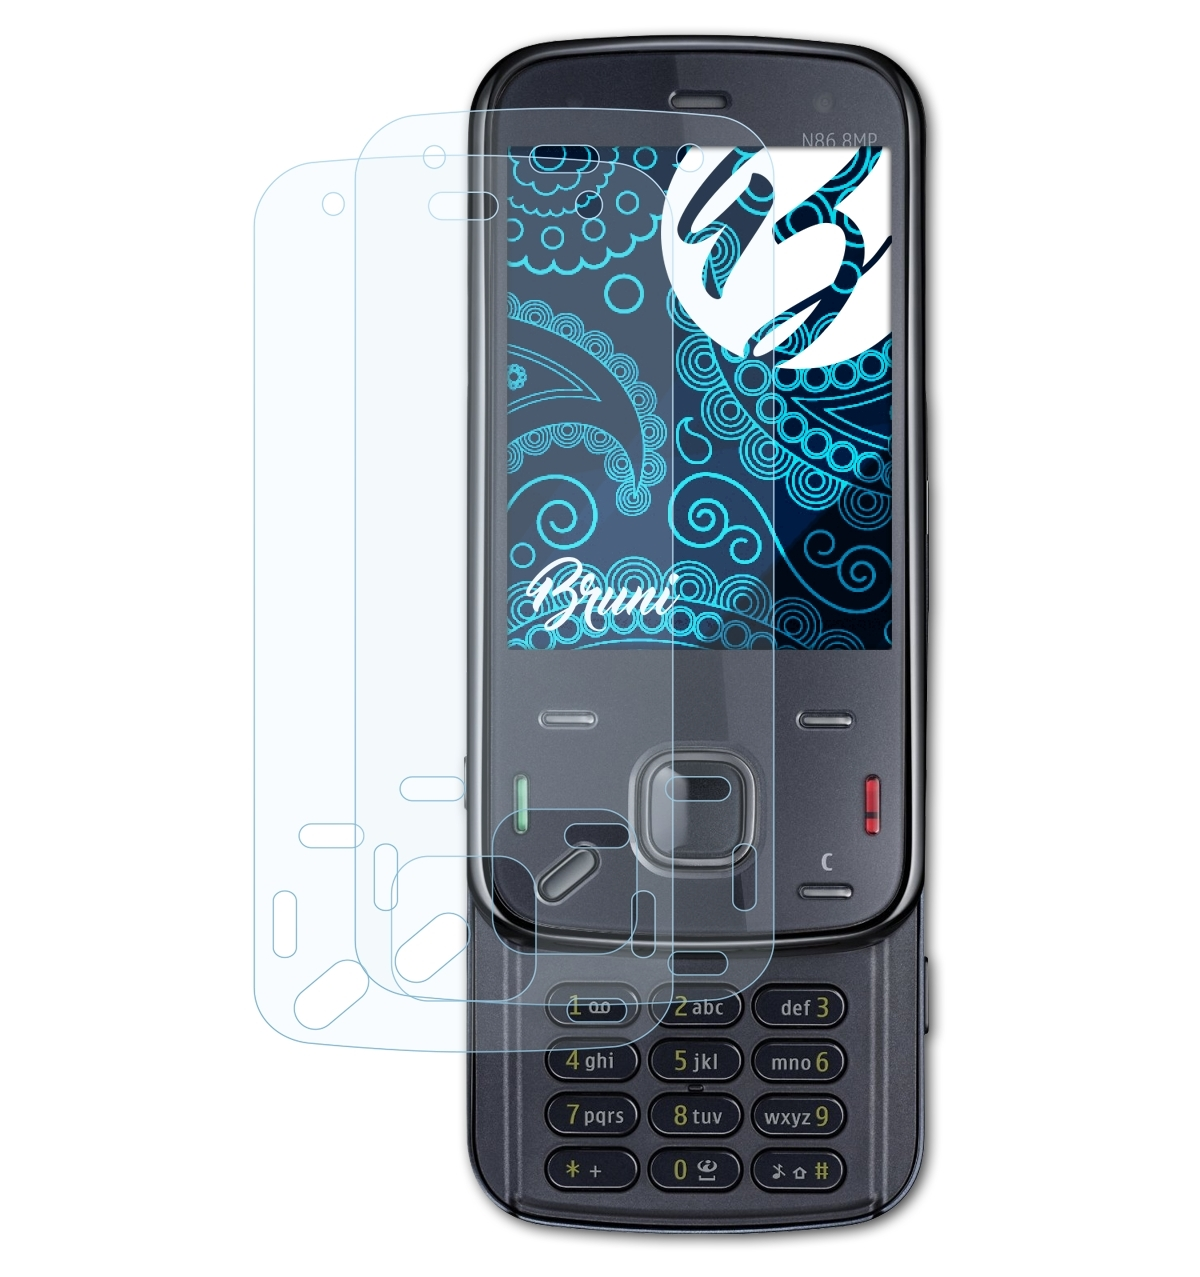 8MP) Schutzfolie(für Nokia BRUNI 2x Basics-Clear N86